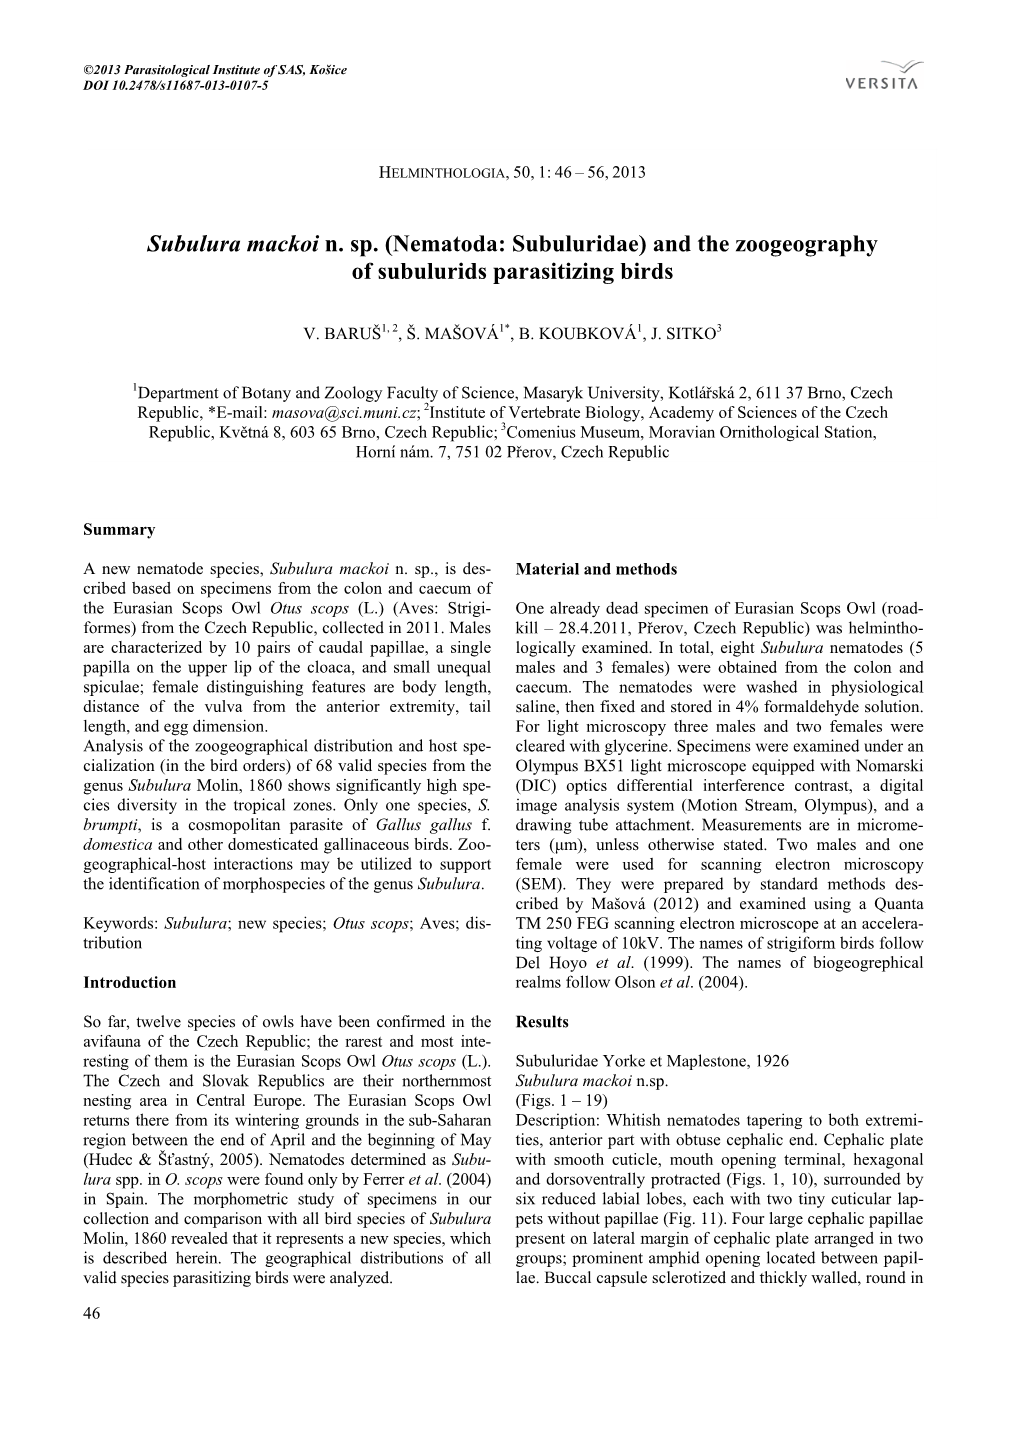 Subulura Mackoi N. Sp. (Nematoda: Subuluridae) and the Zoogeography of Subulurids Parasitizing Birds